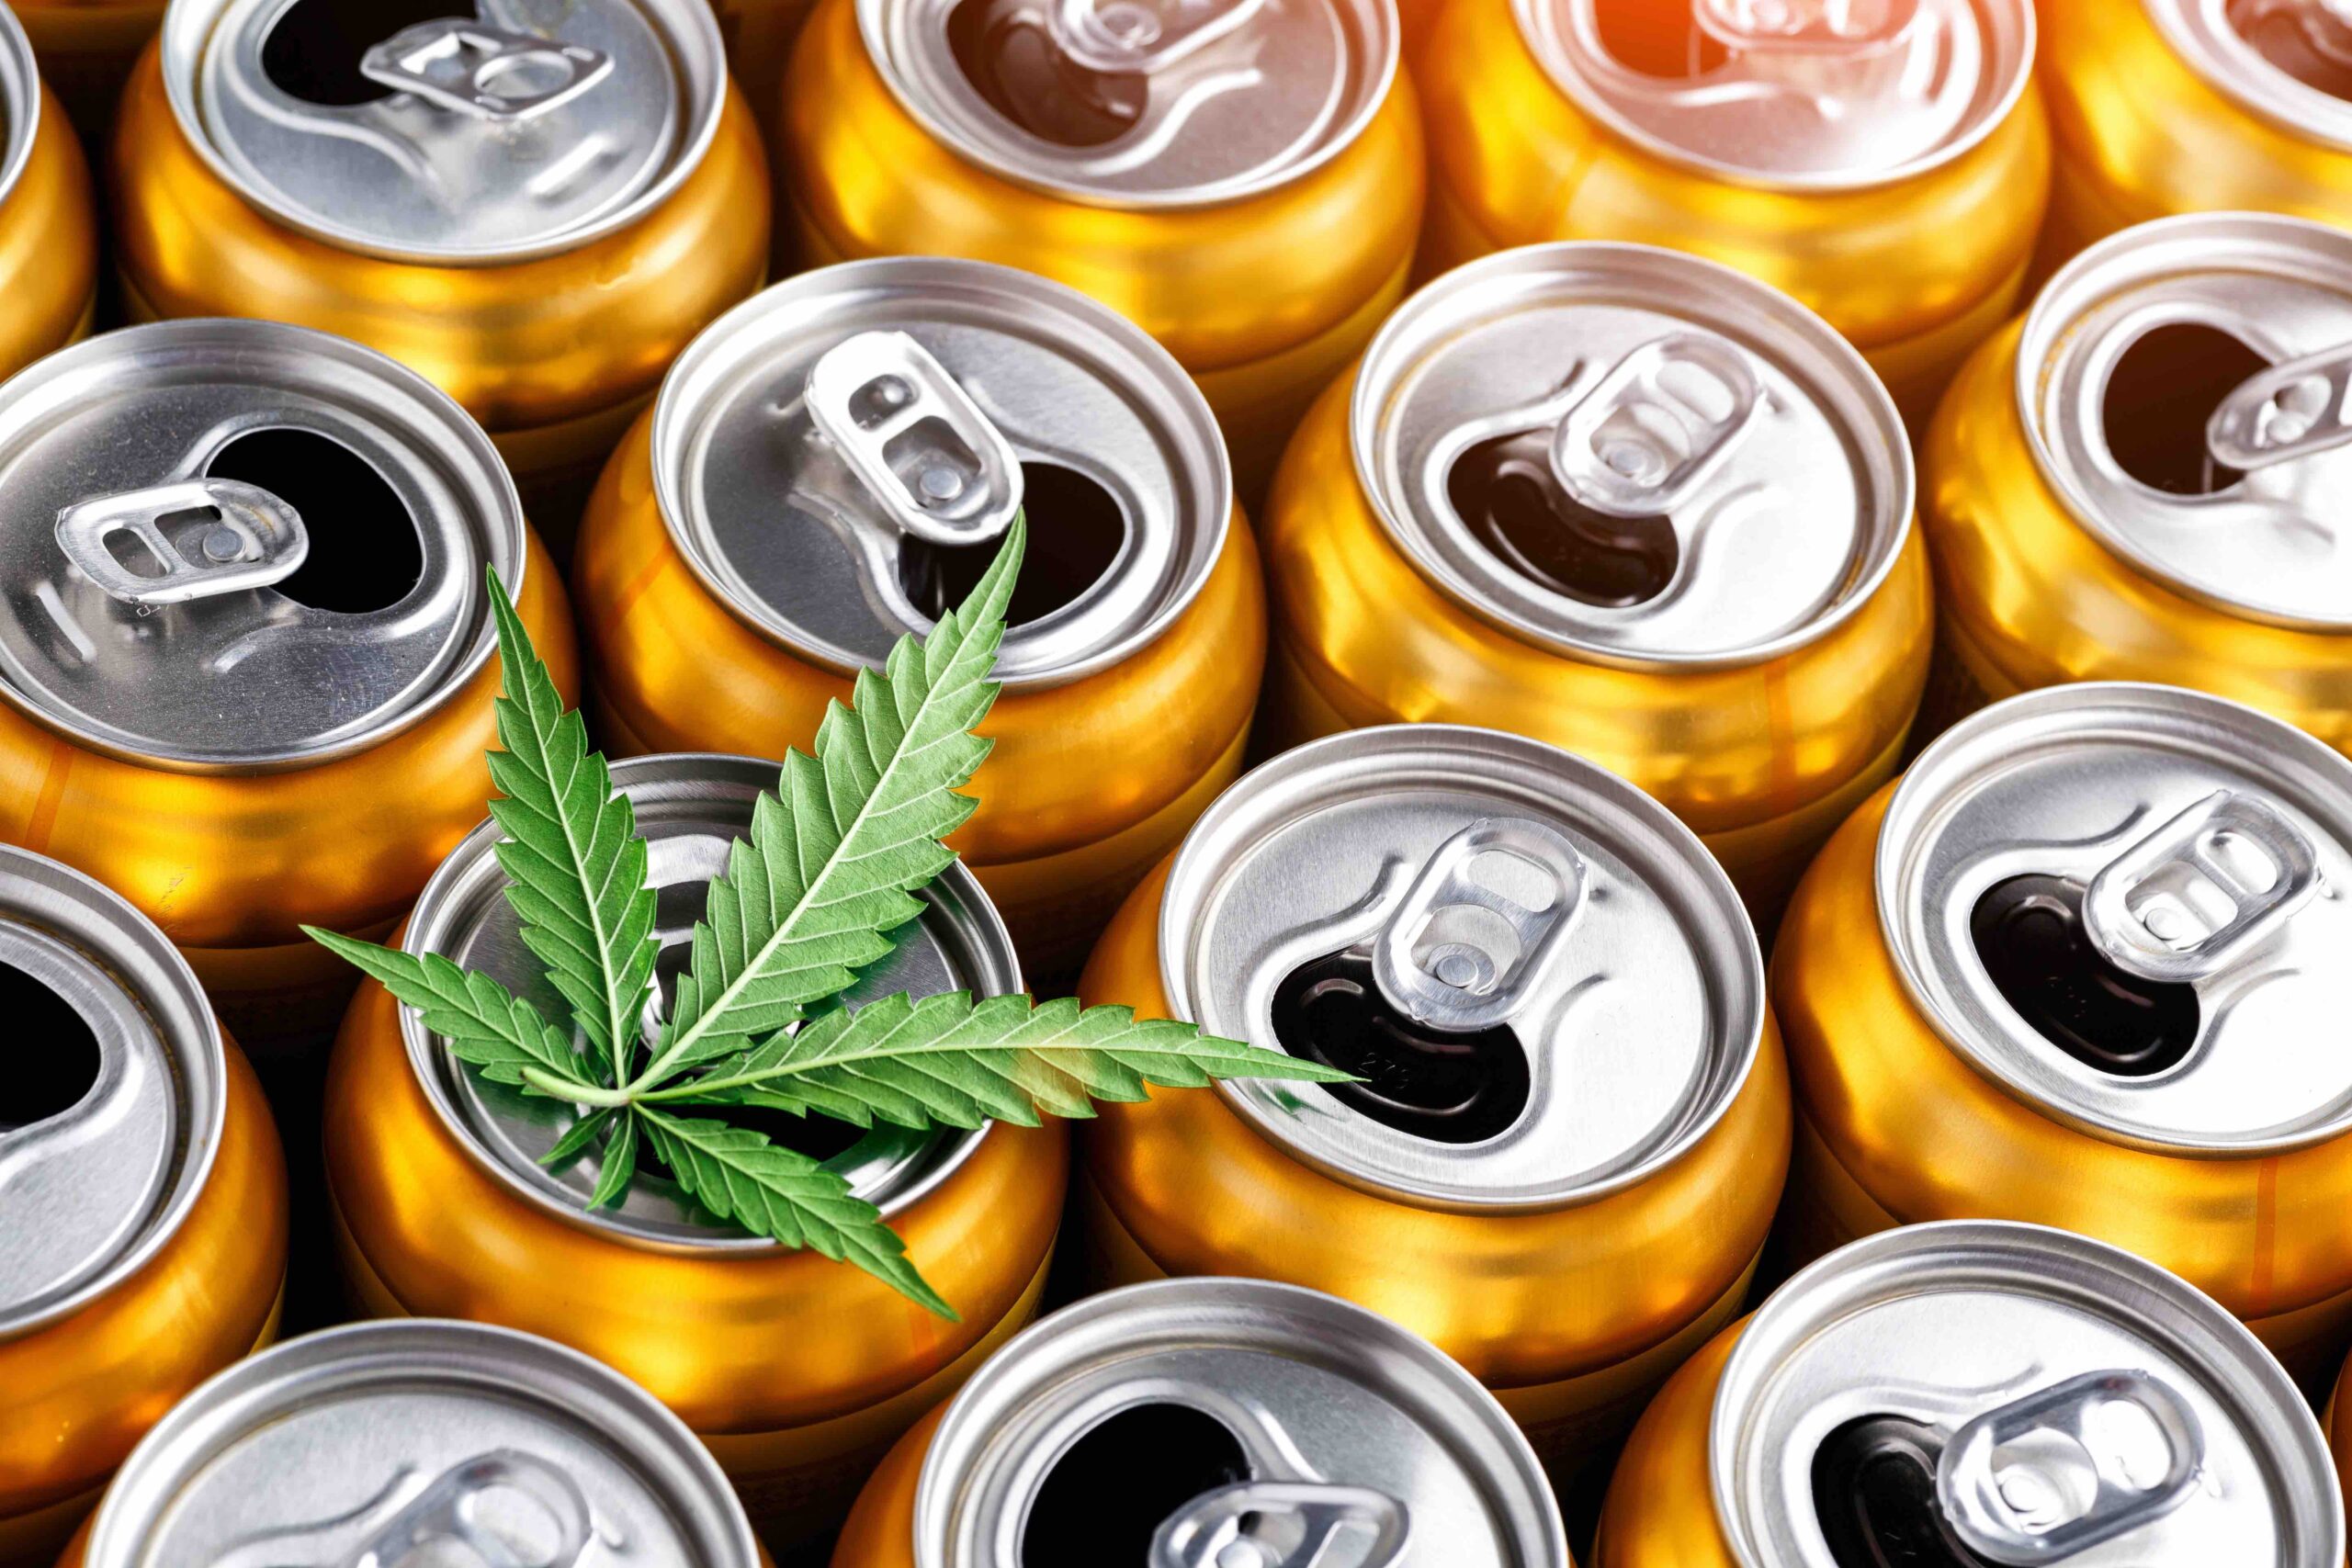 Is it time to regulate alcohol like marijuana?